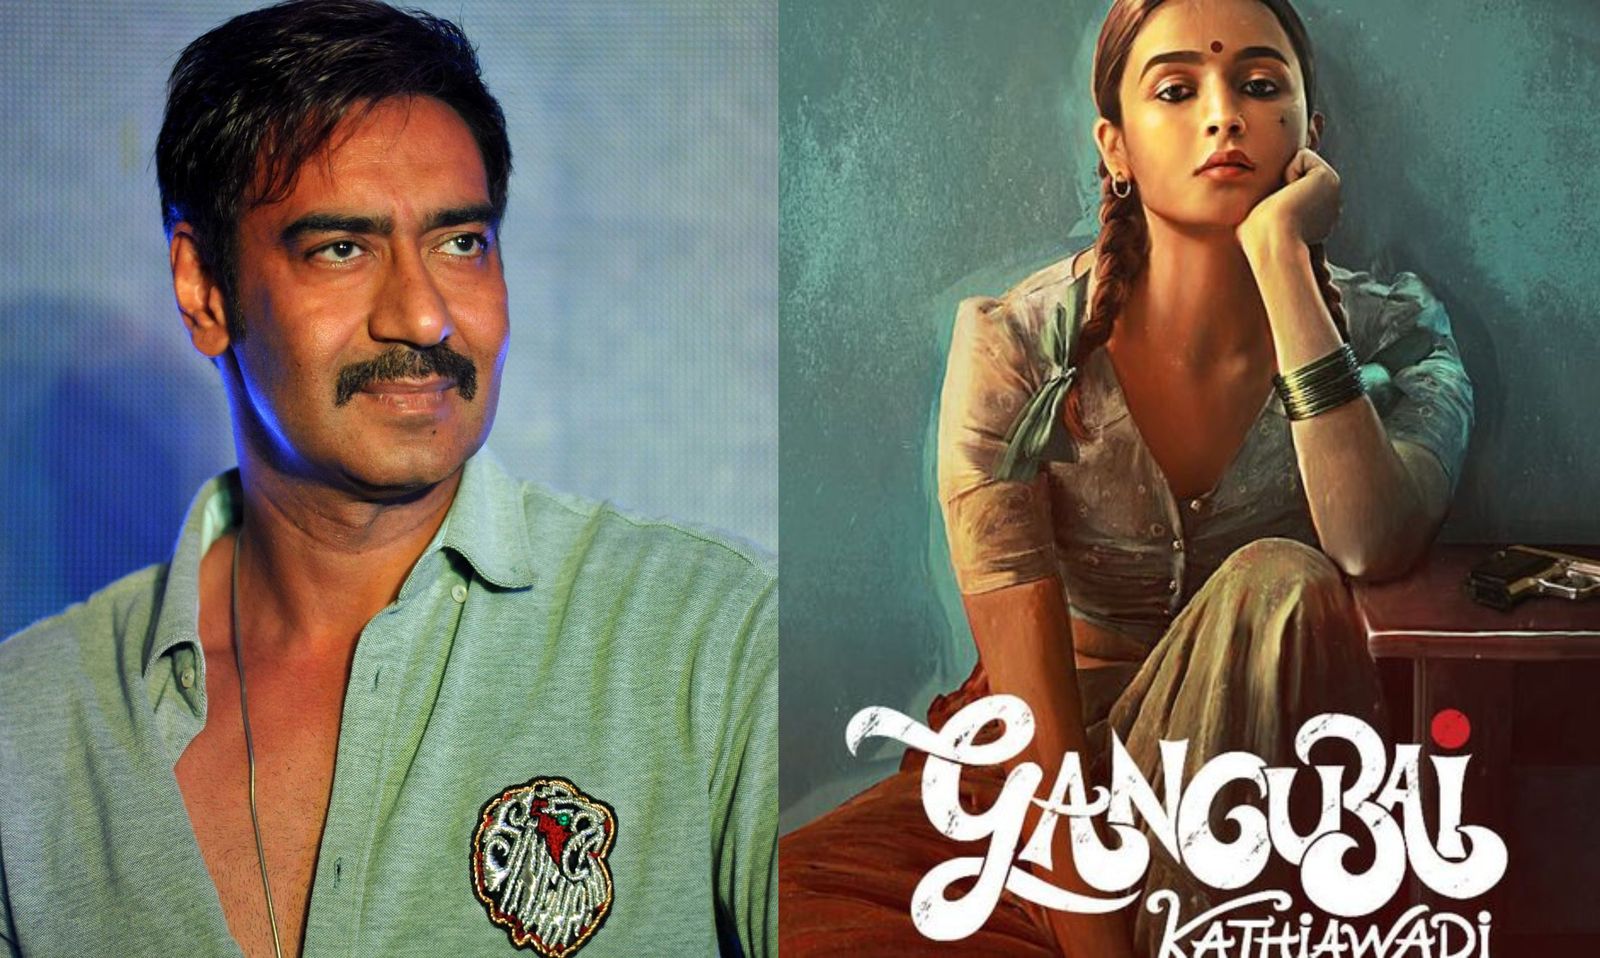 आलिया भट्ट और अजय देवगन फिल्म 'गंगूबाई कठियावाड़ी' के लिए पहली बार साथ में कर रहे हैं शूट